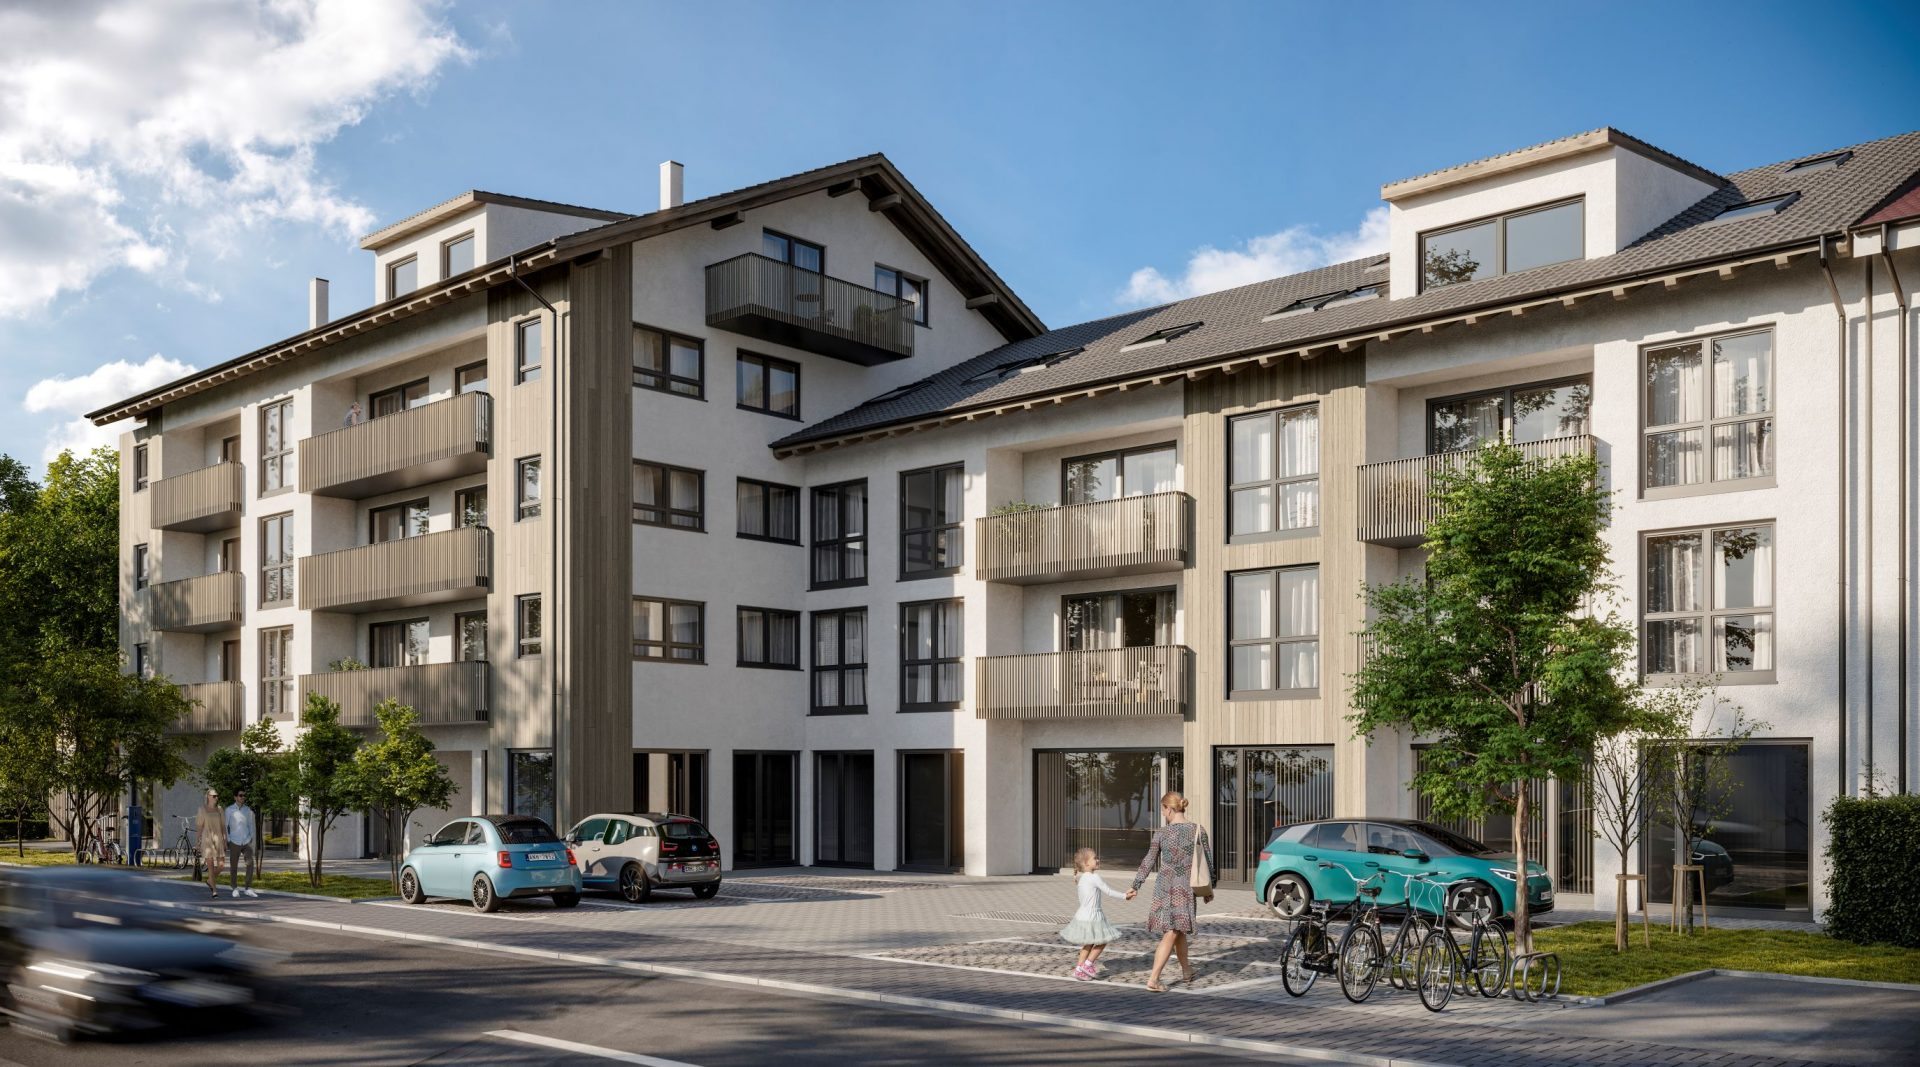 Der Bau eines Wohn- und Geschäftshauses in Garmisch-Partenkirchen hat begonnen